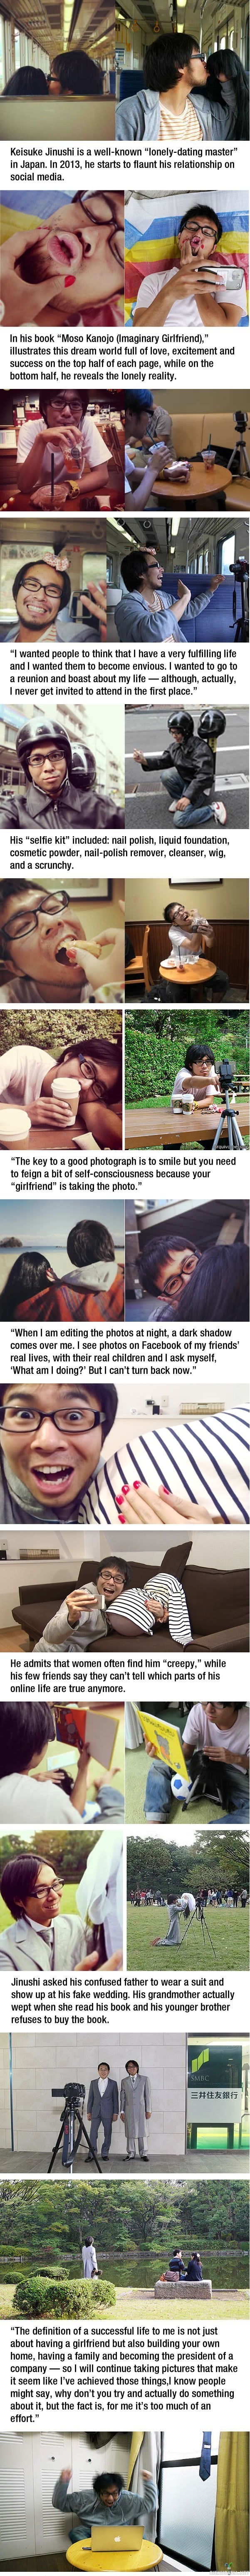 Keisuke Jinushi - Lonely dating master - Keisuke Jinushi ottaa kuvia sosiaaliseen mediaan joissa näyttää että hän seurustelisi, mutta todellisuus on ihan toisenlainen